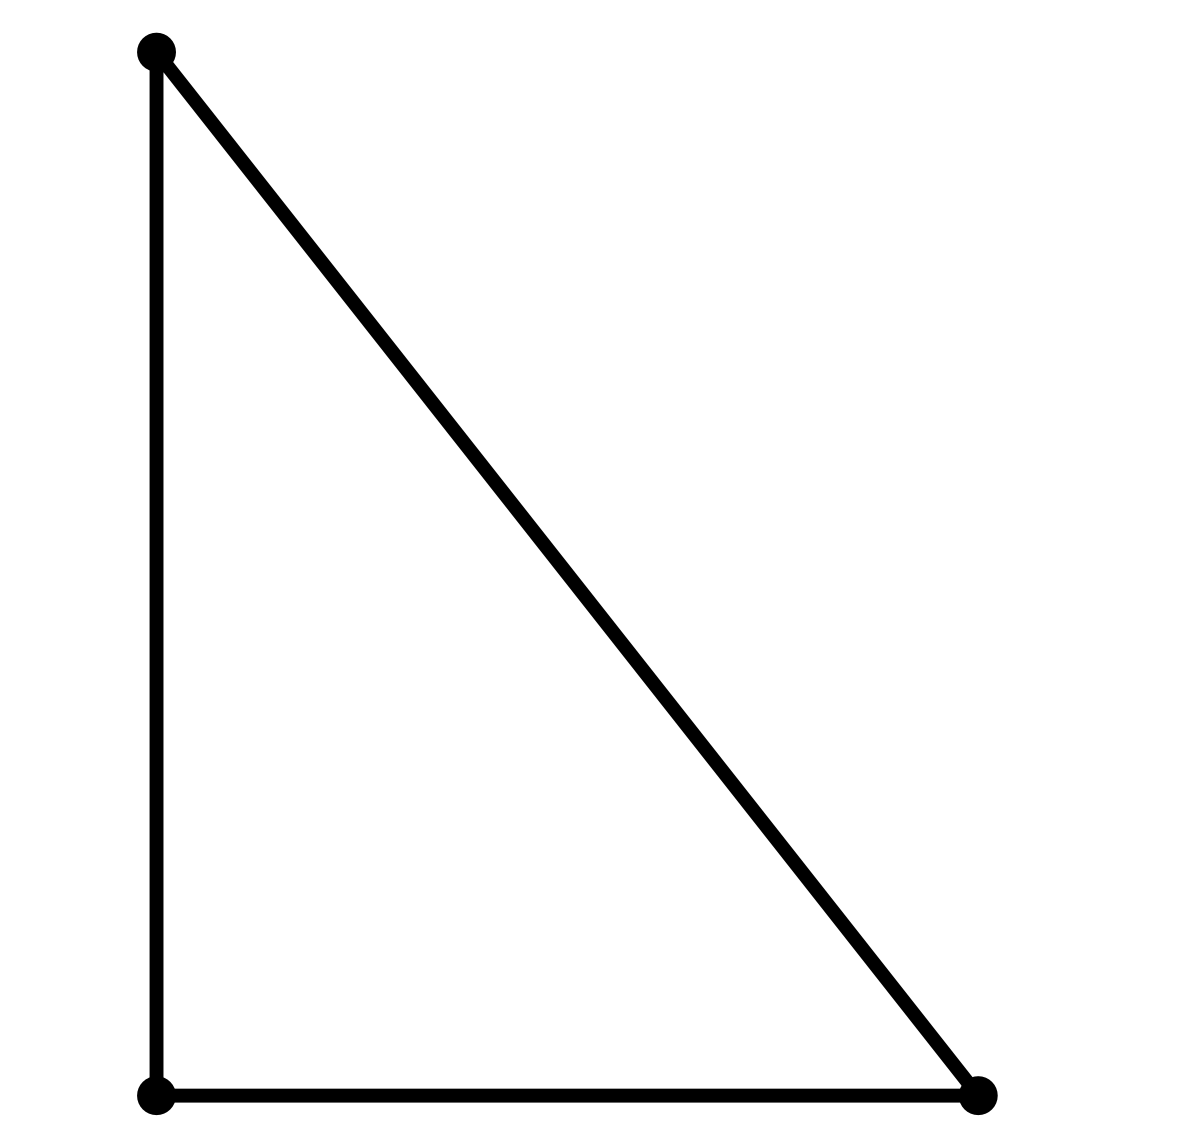 Прямоугольный треугольник изображен под буквой. Прямоугольный треугольник. Прямойгольныйтреугольник. Прямоугольный треуголь. Прямоугольный треугольник рисунок.